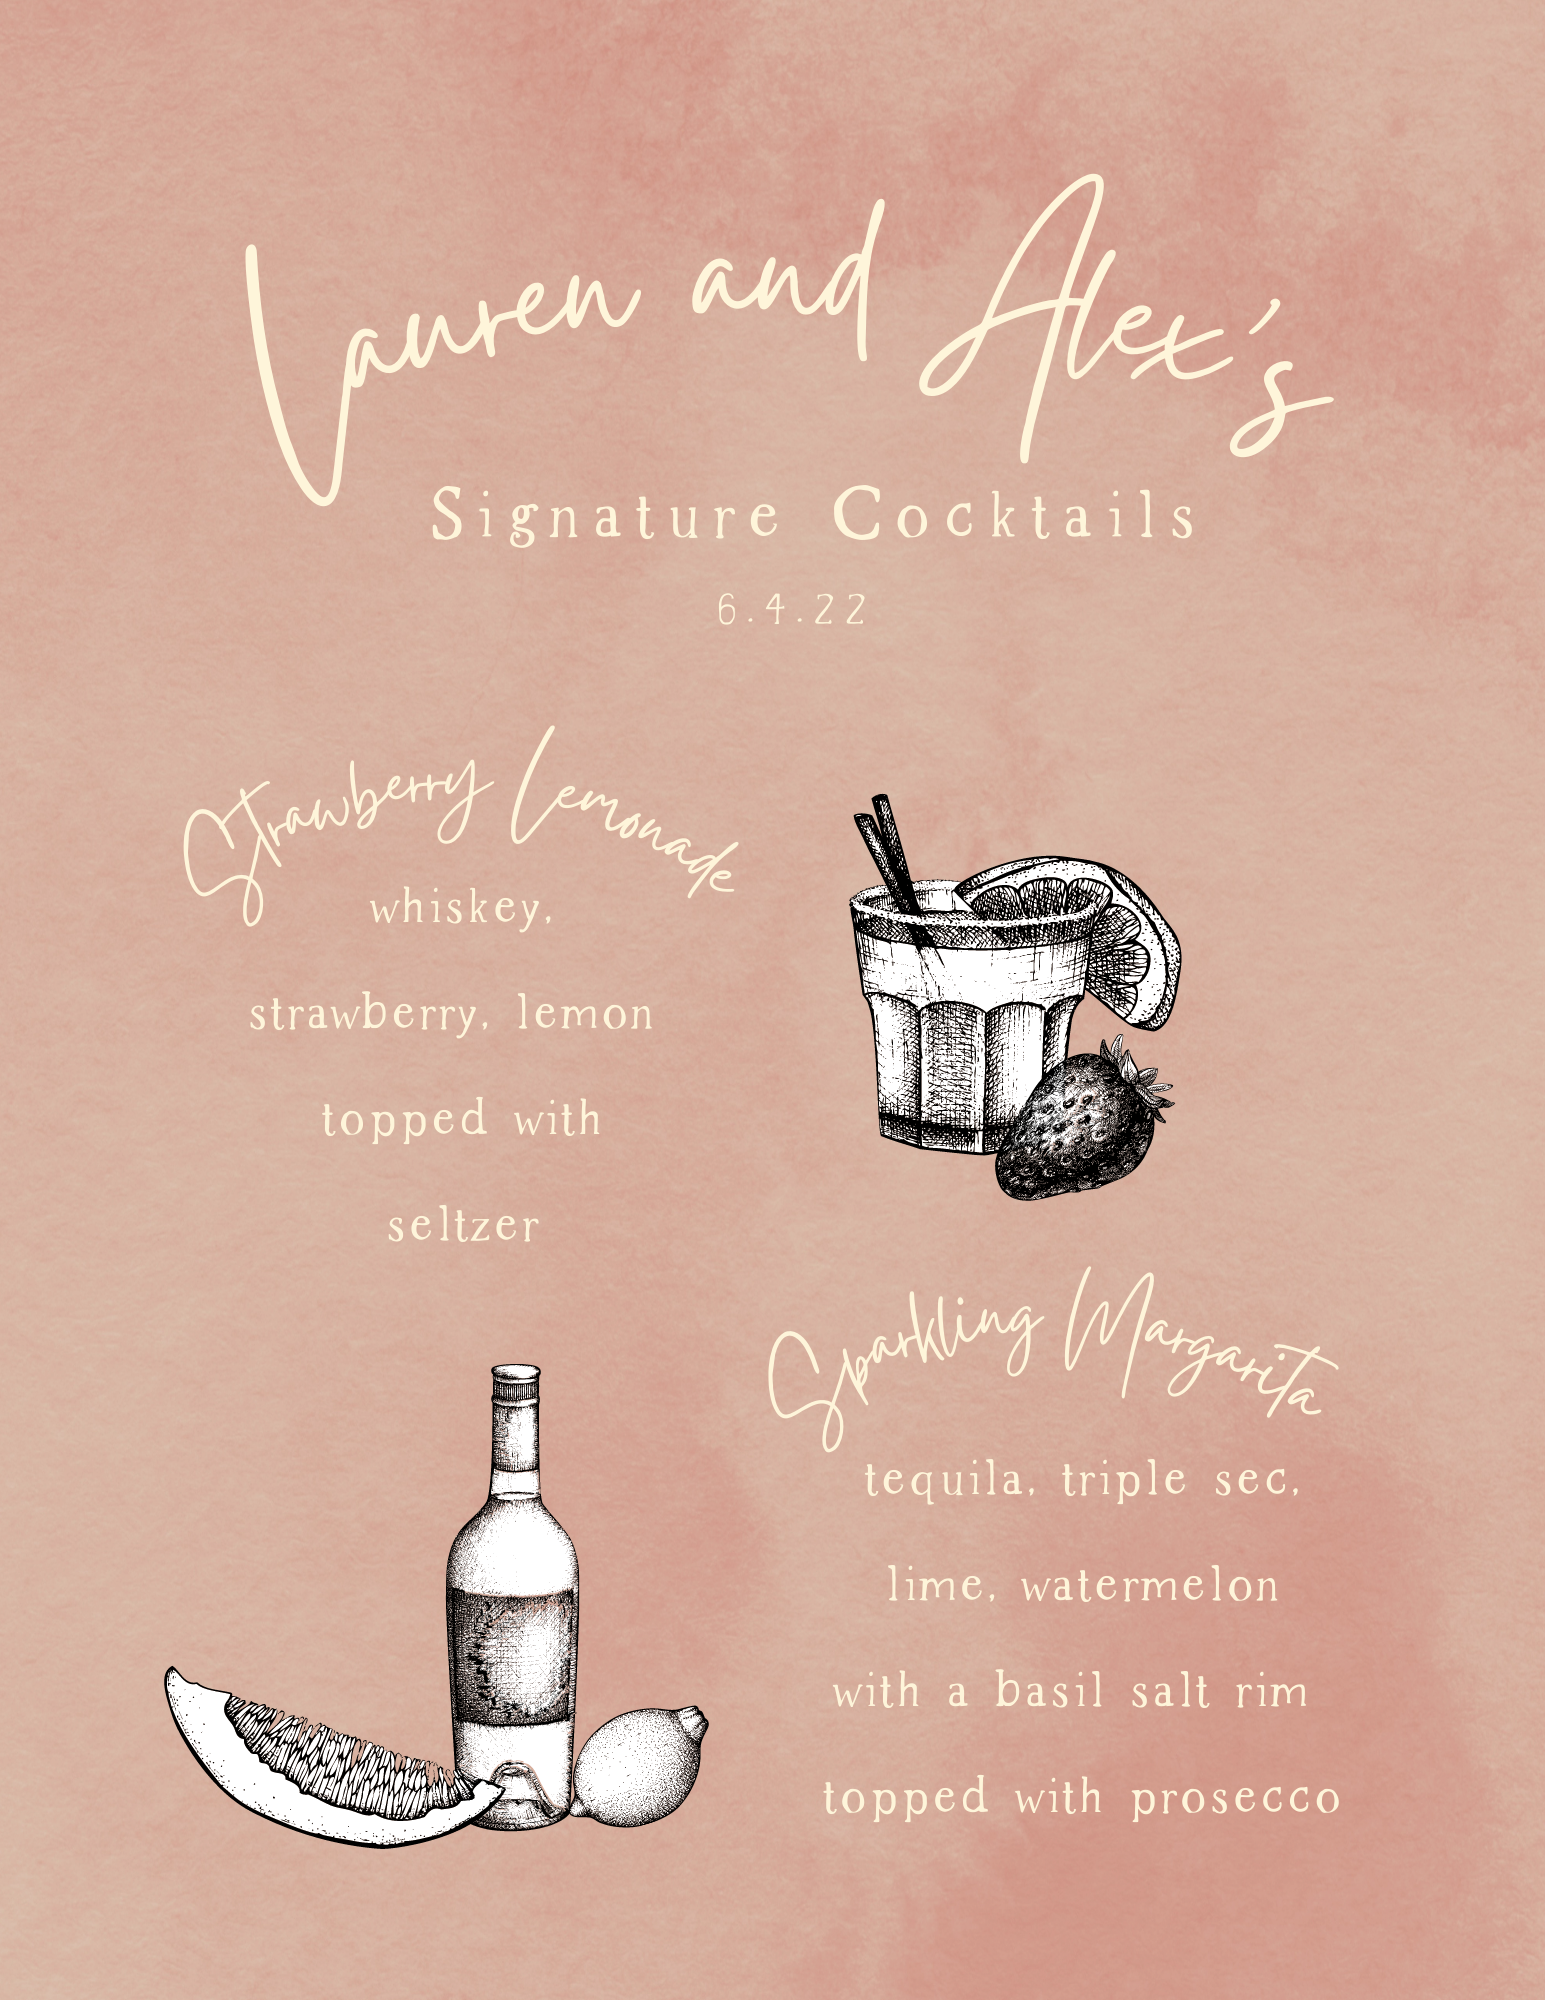 LaurenAlex Signature Cocktails.png